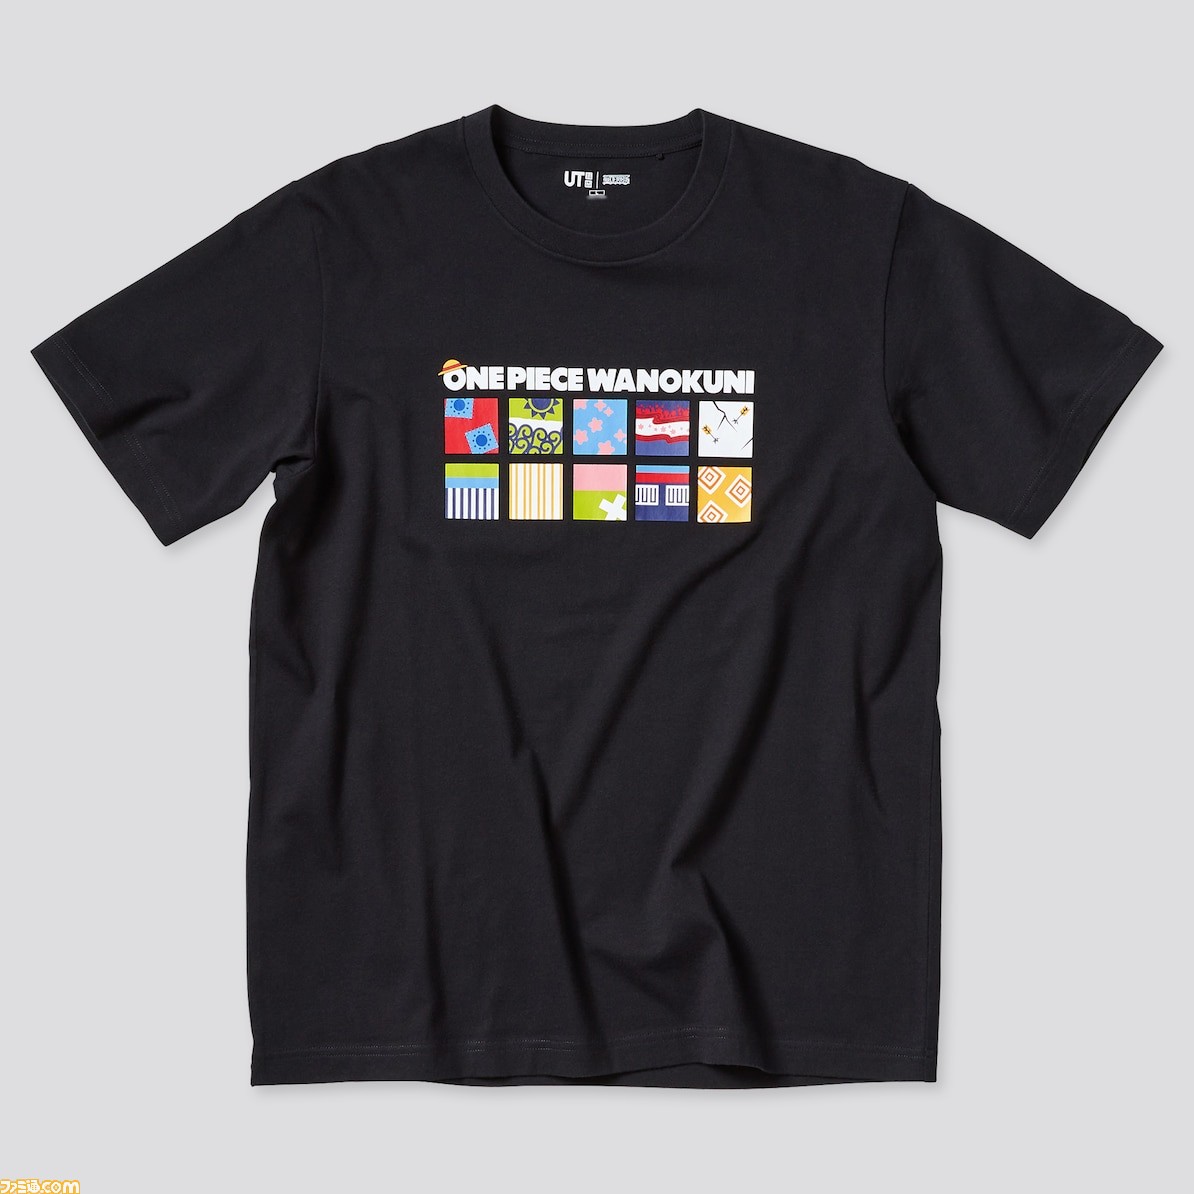 ワンピース とユニクロのコラボtシャツが4月23日より発売 ワノ国 をコンセプトにデザインされた6柄がラインアップ ゲーム エンタメ最新情報のファミ通 Com